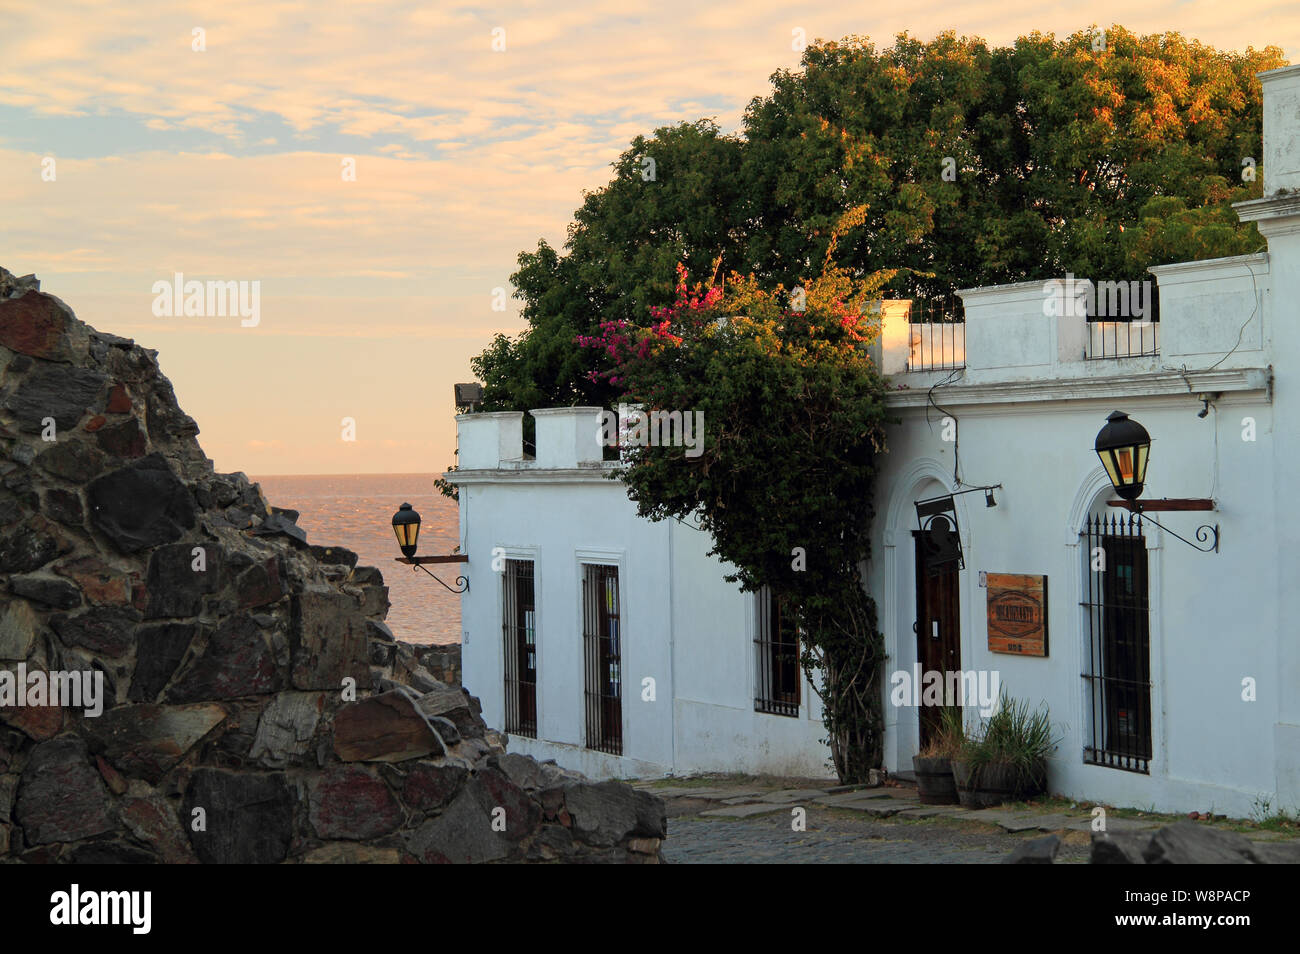 Ruines anciennes, rues pavées pittoresques, et le portugais et l'architecture espagnole constituent certaines des fonctionnalités de premier de Colonia del Sacramento en Uruguay Banque D'Images